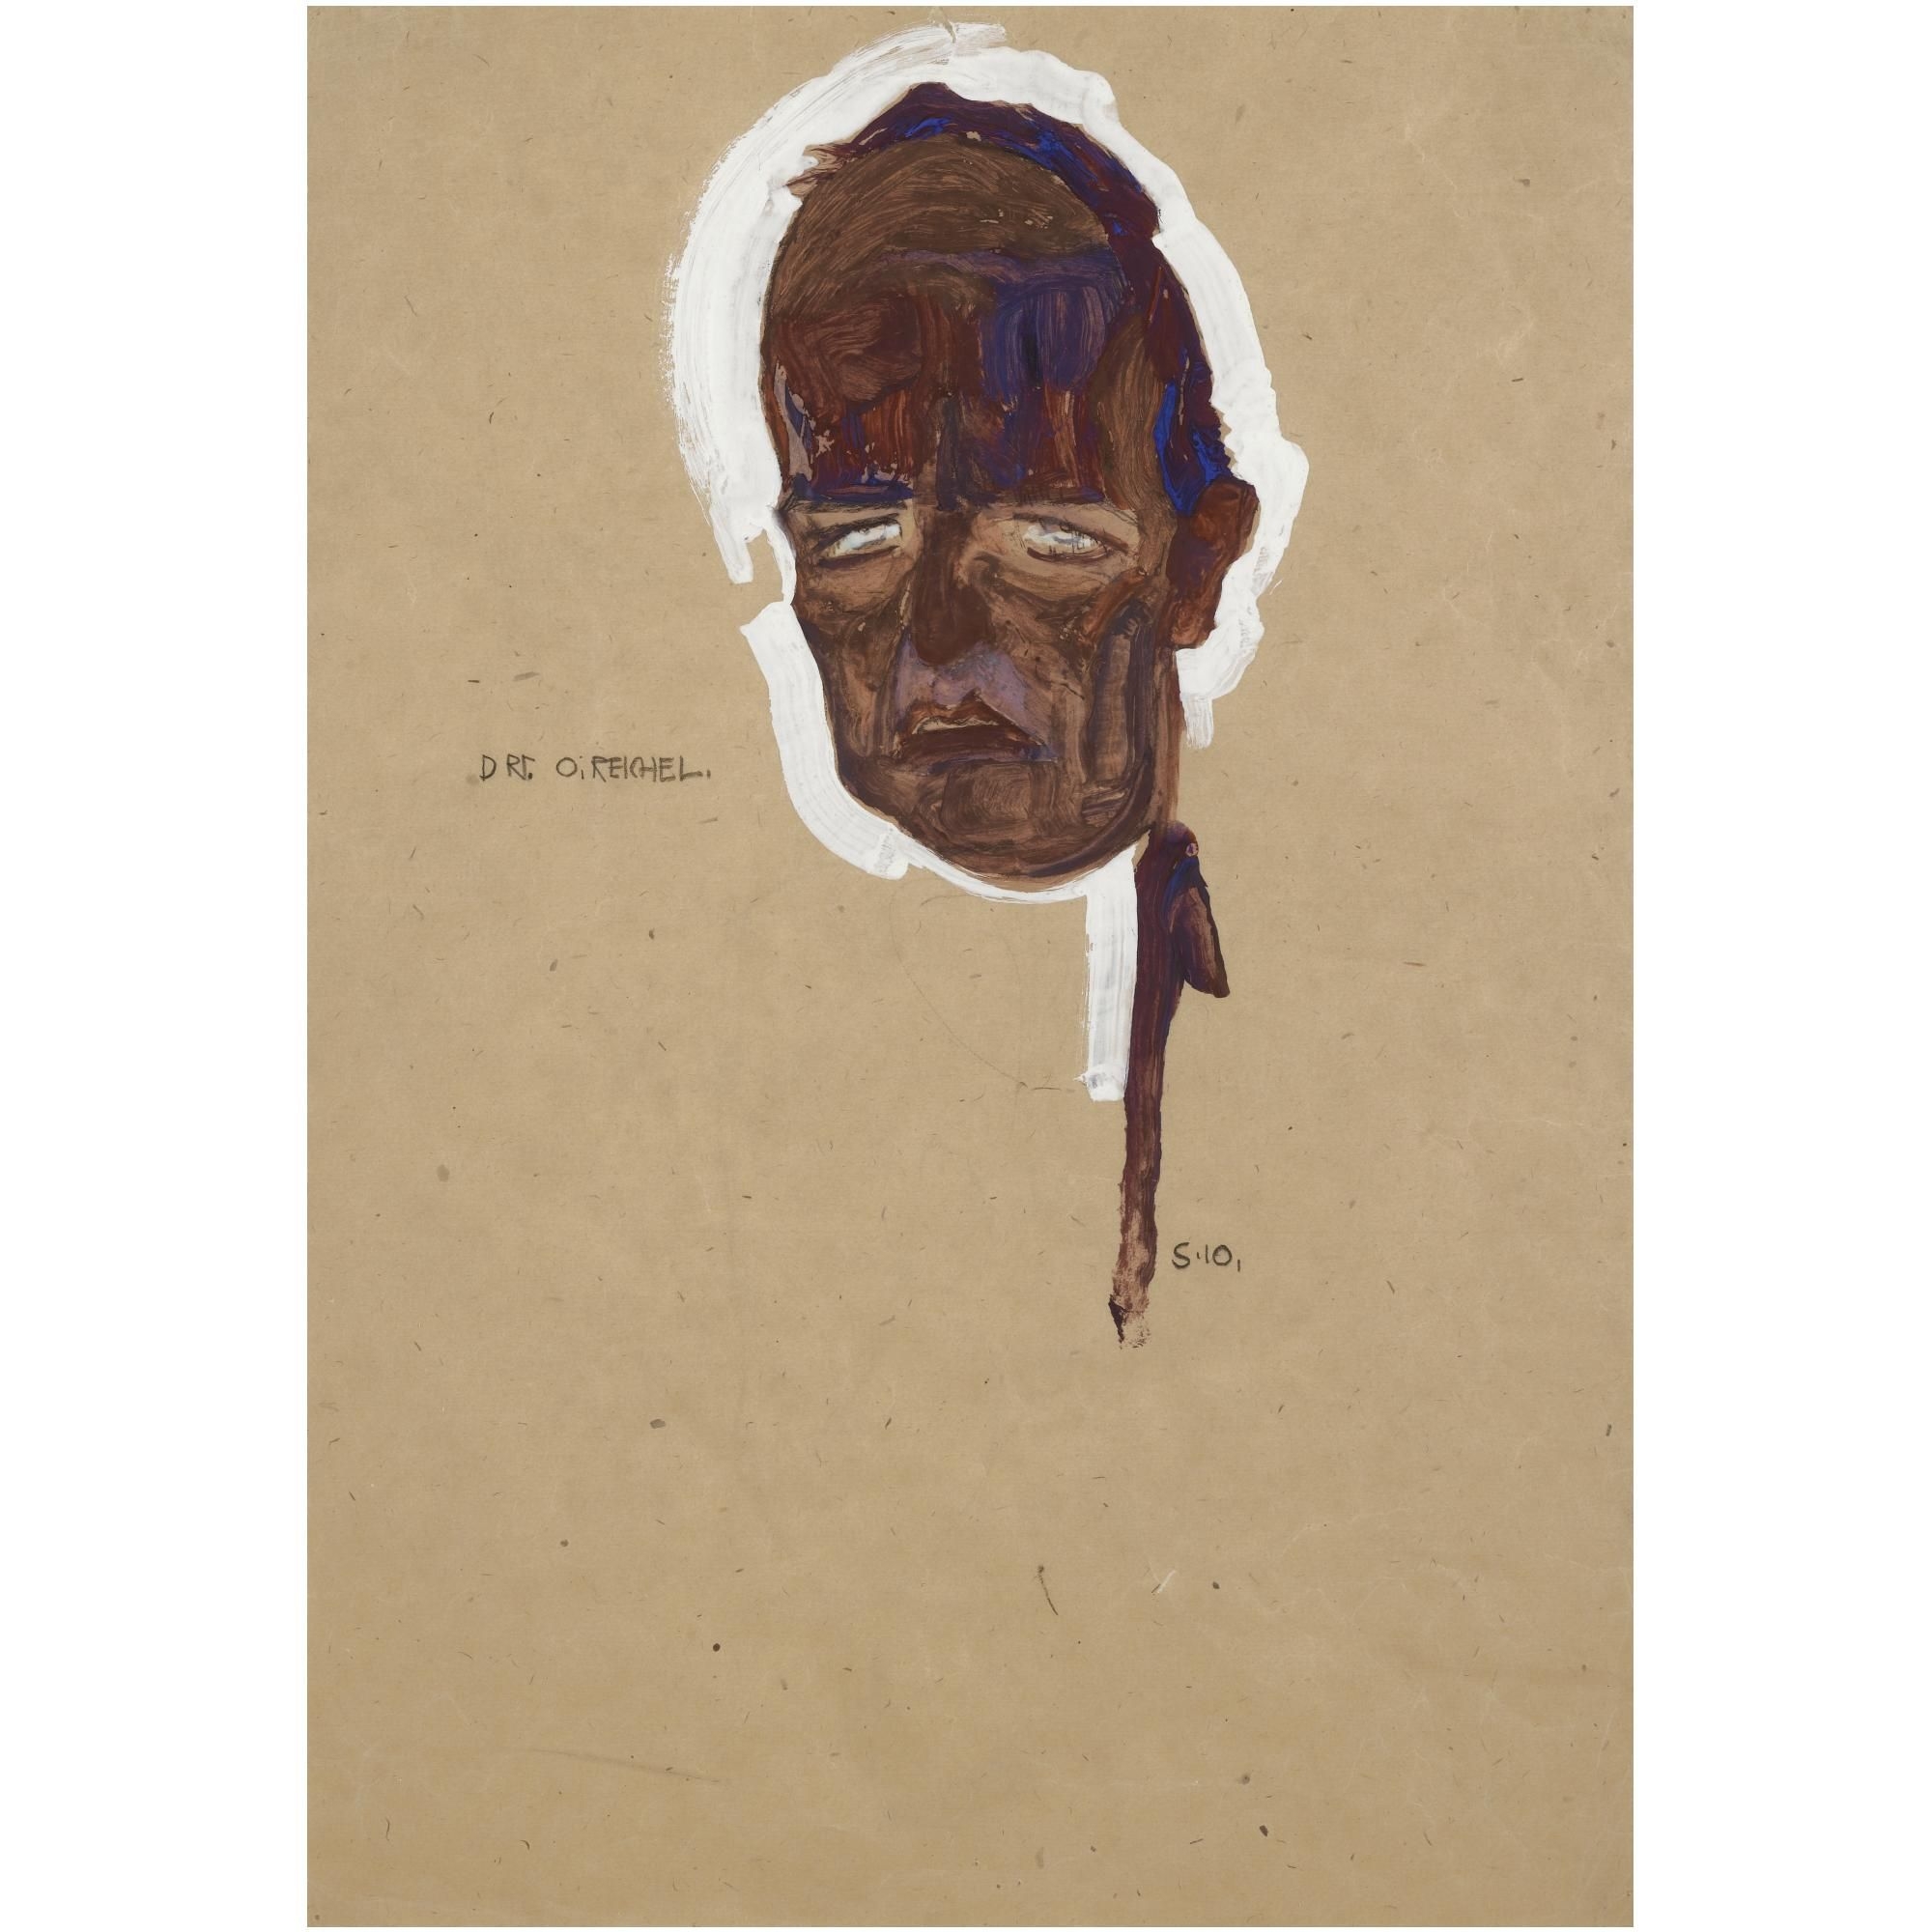 BILDNIS DR OSKAR REICHEL, MASKE (PORTRAIT OF DR OSKAR REICHEL, HEAD STUDY) by Egon Schiele, FullFormat:,year,1910